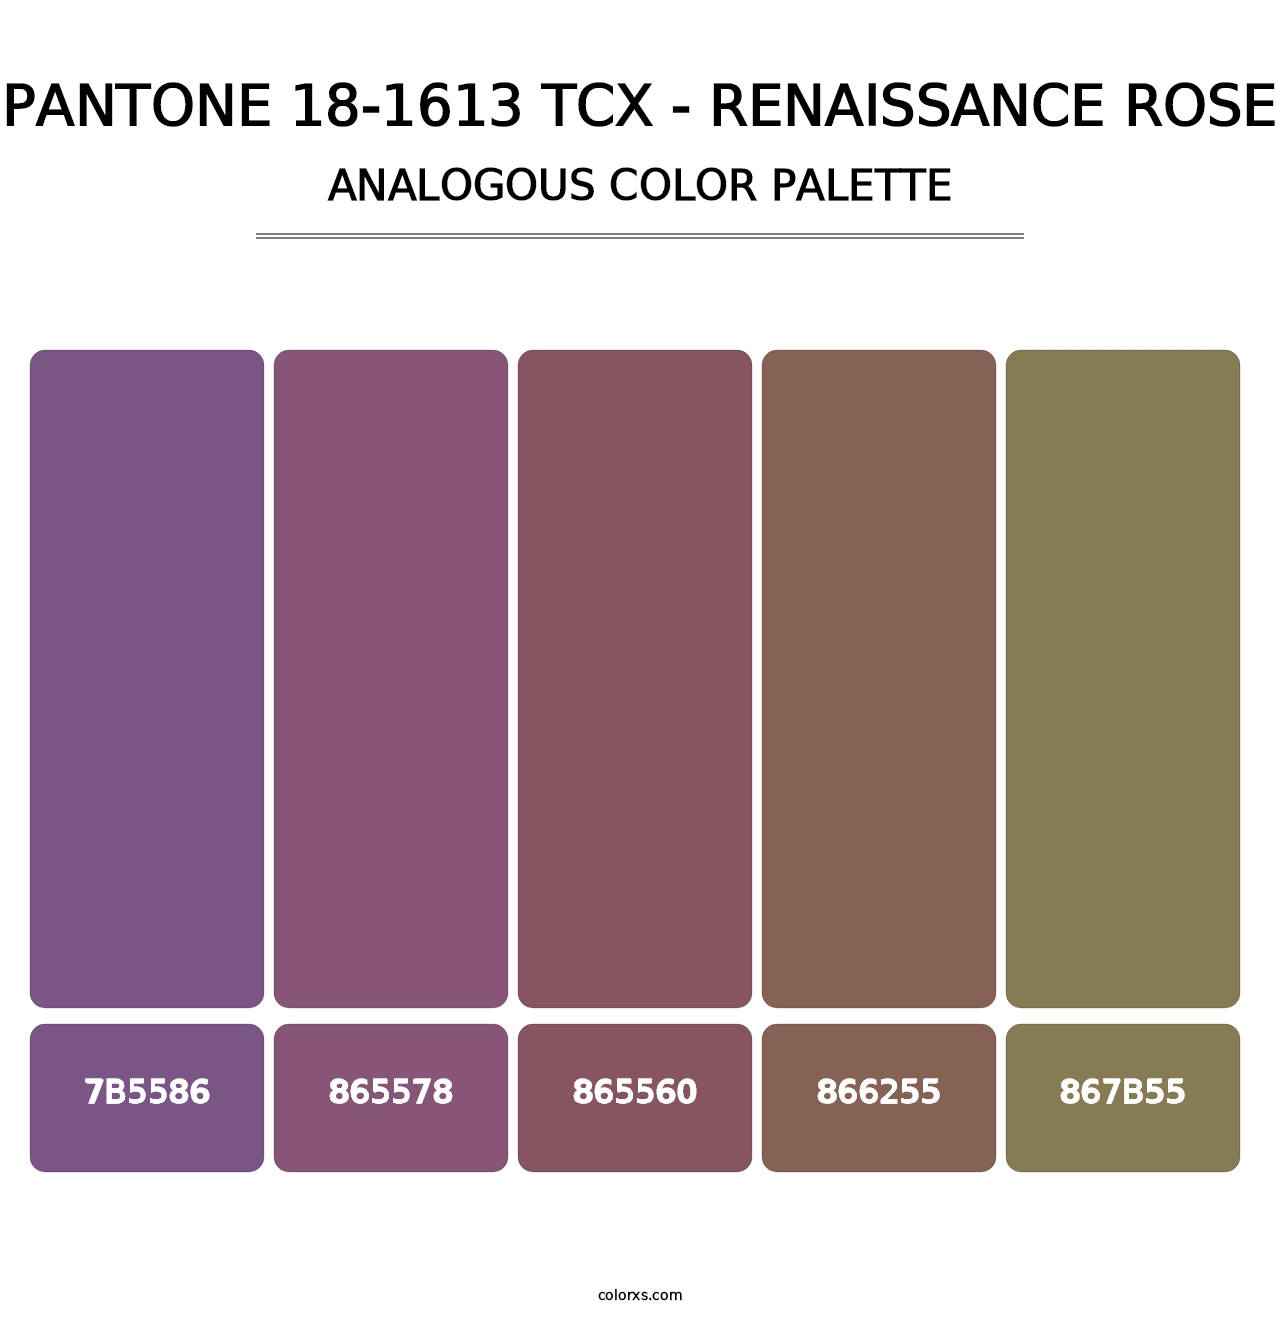 PANTONE 18-1613 TCX - Renaissance Rose - Analogous Color Palette